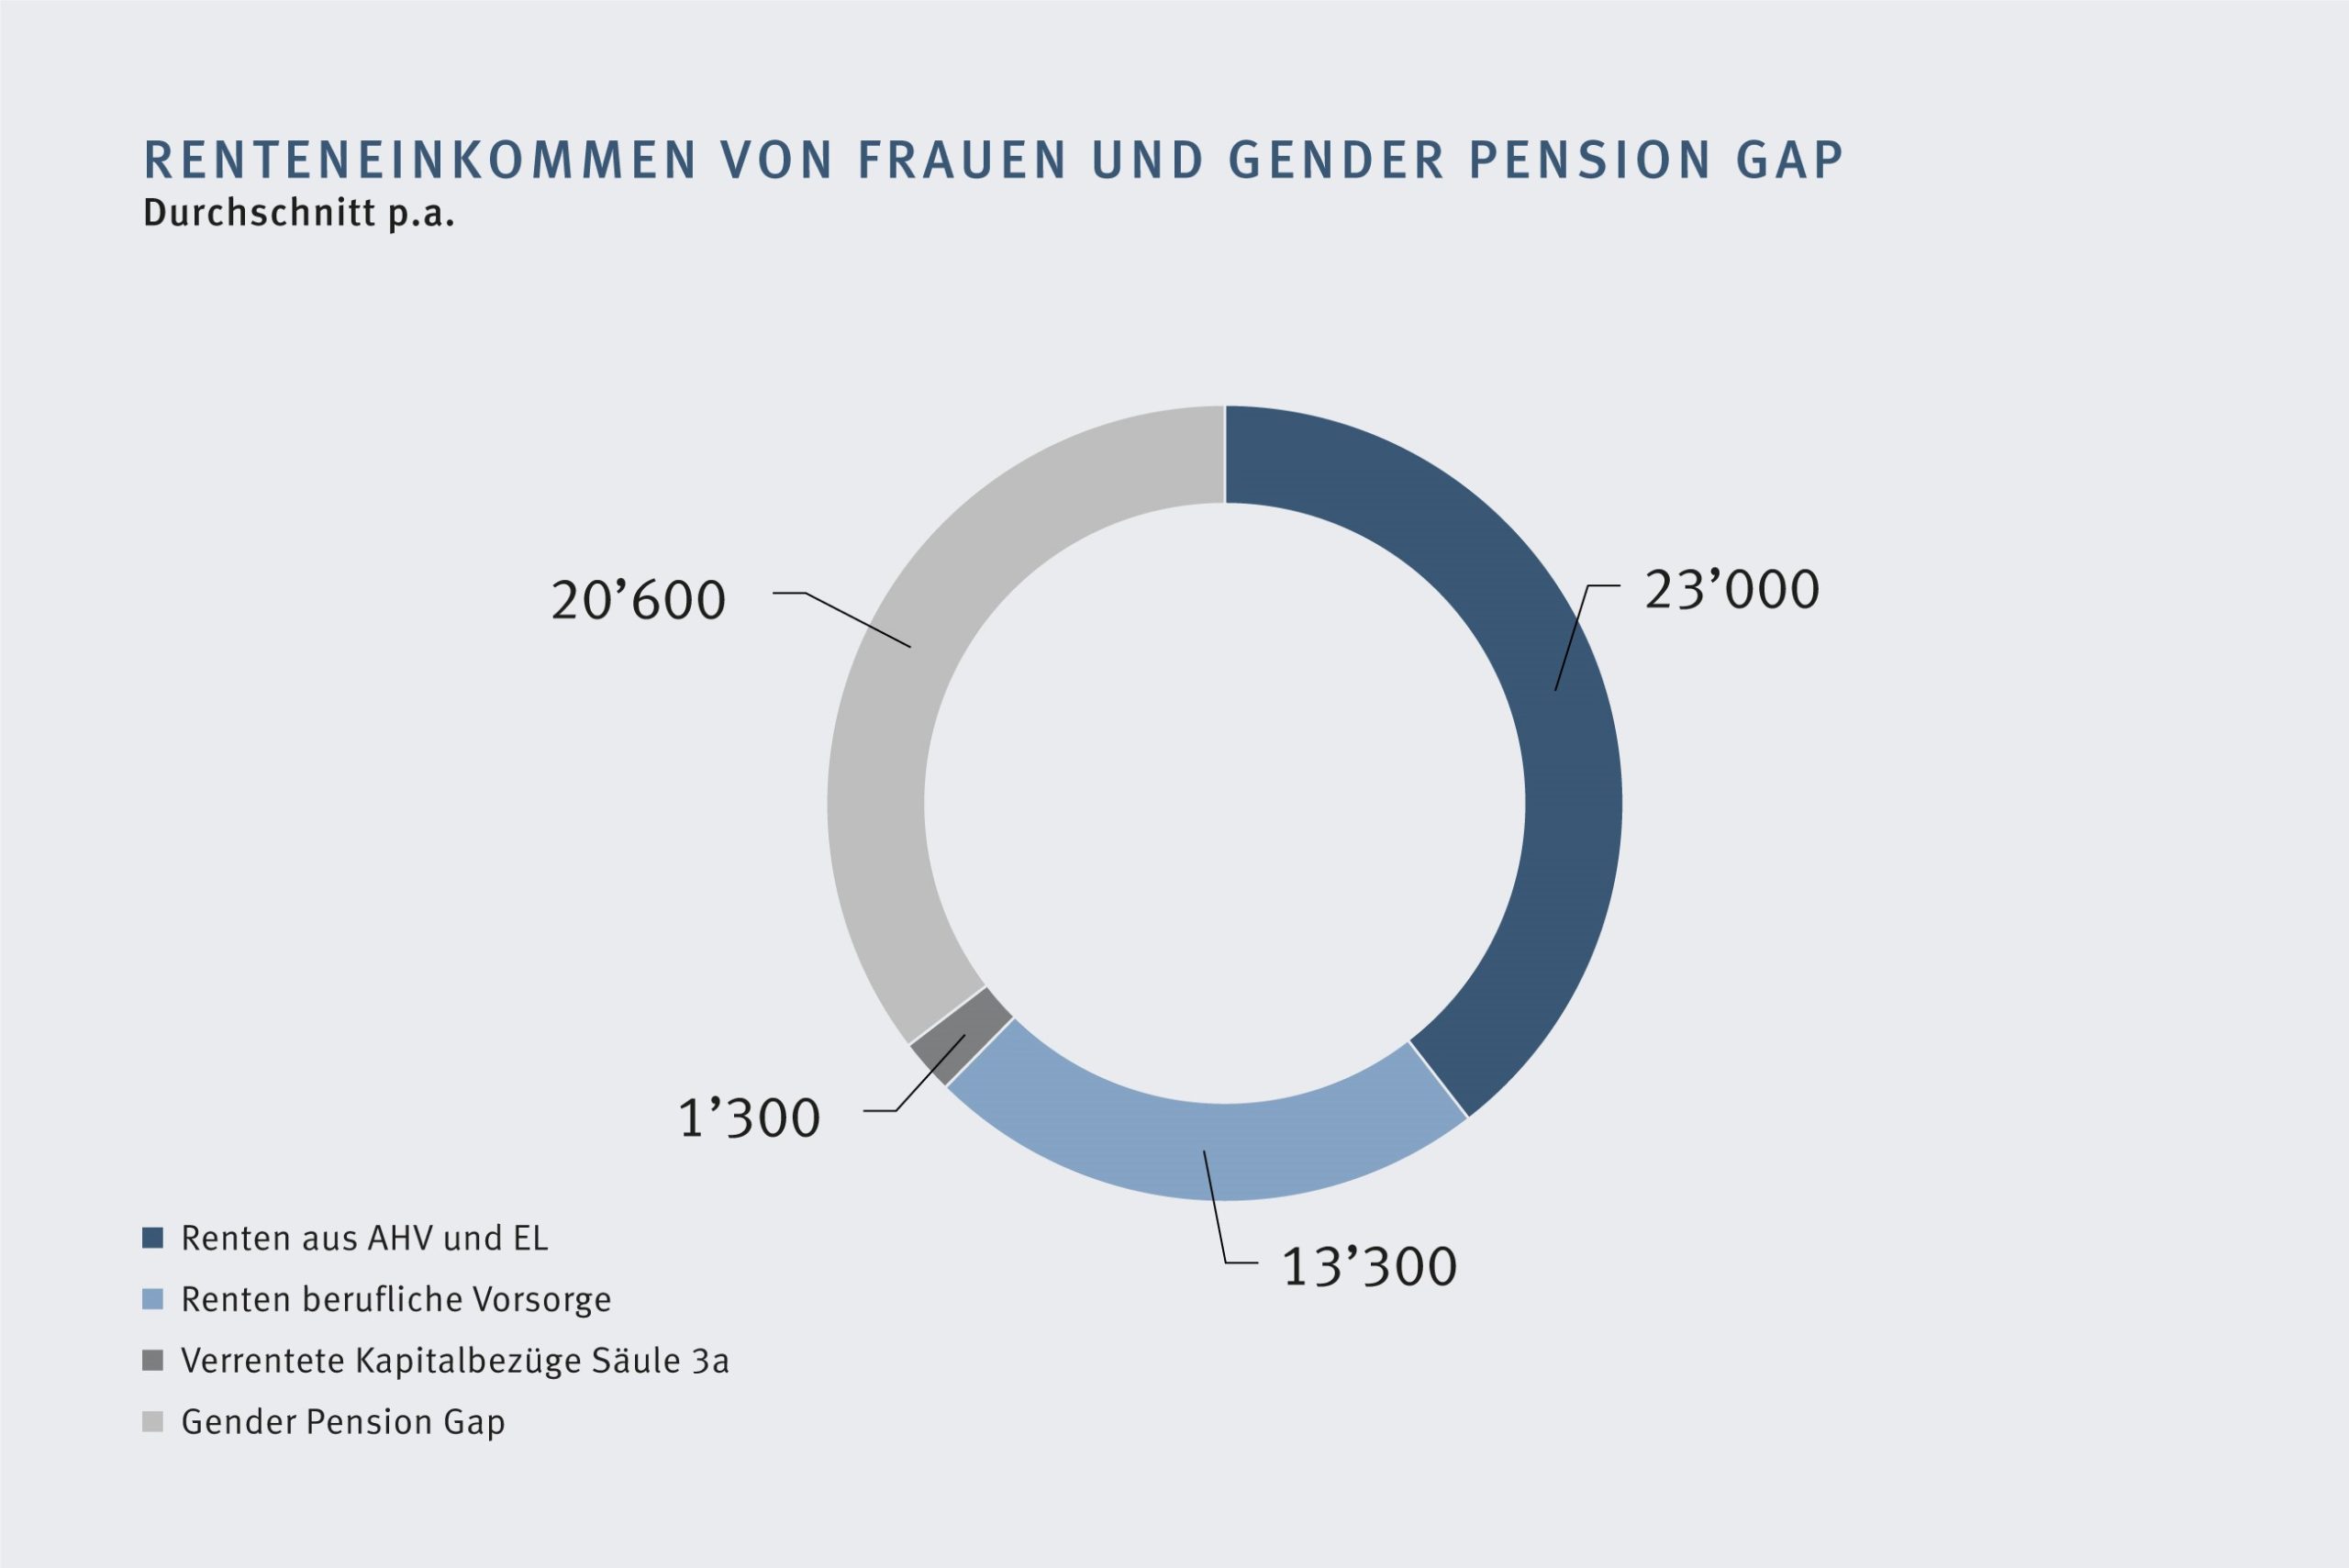 Das Renteneinkommen von Frauen und der Gender Pension Gap